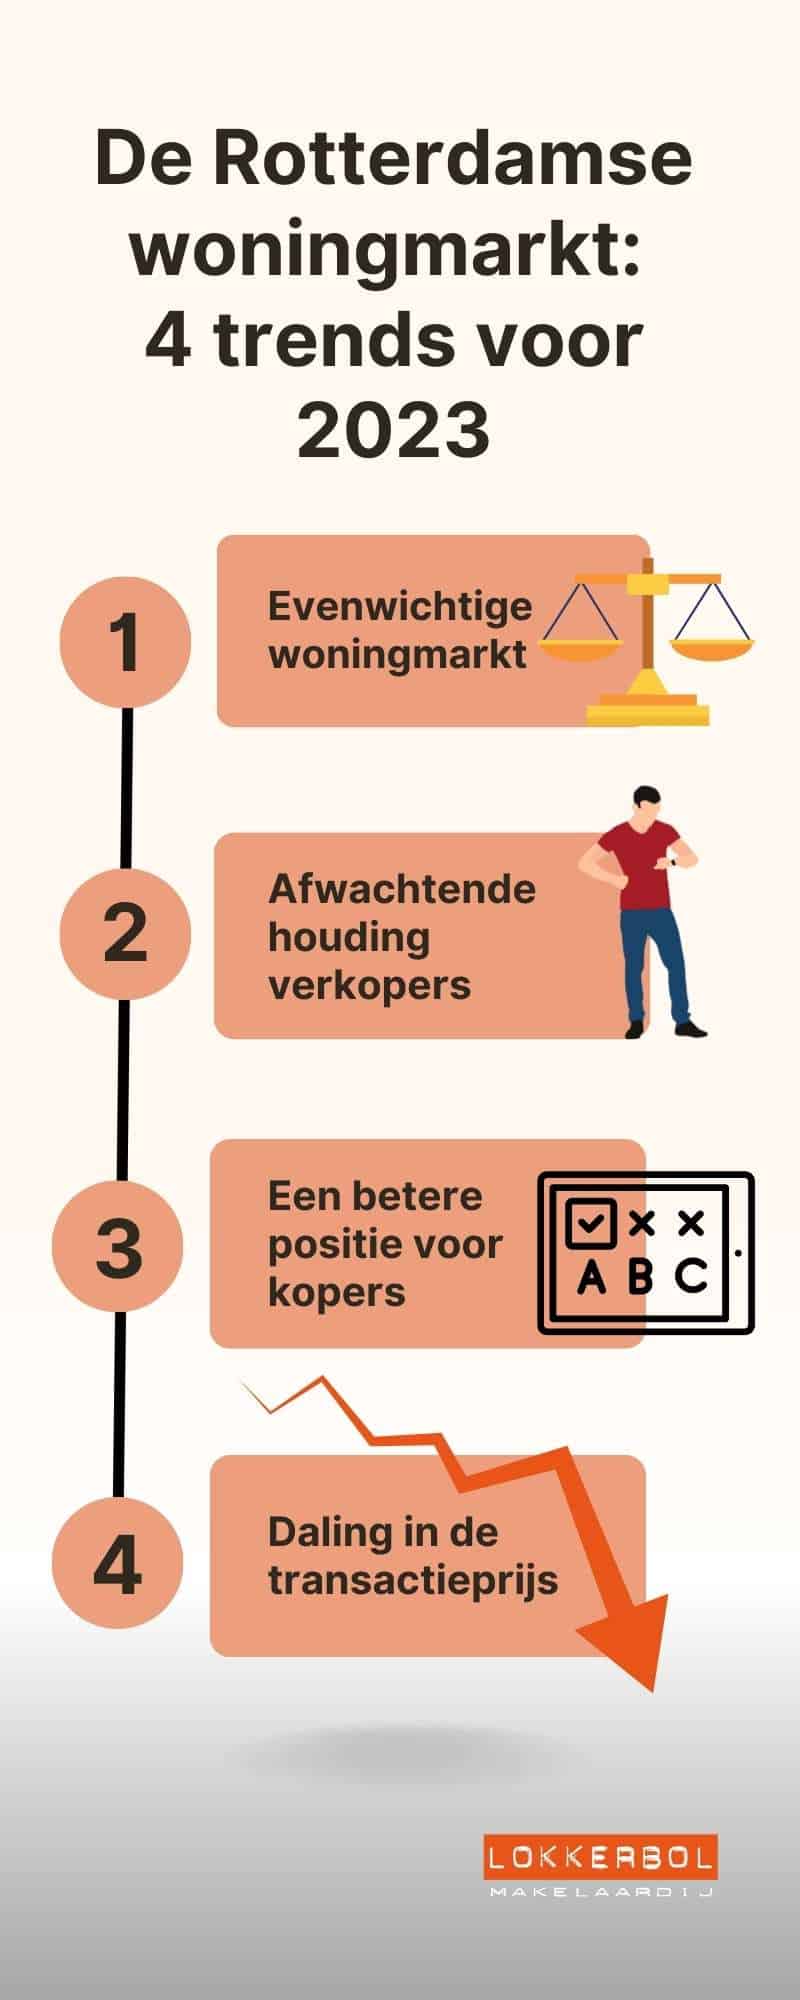 Infographic van de Rotterdamse woningmarkt met 4 trends voor 2023.